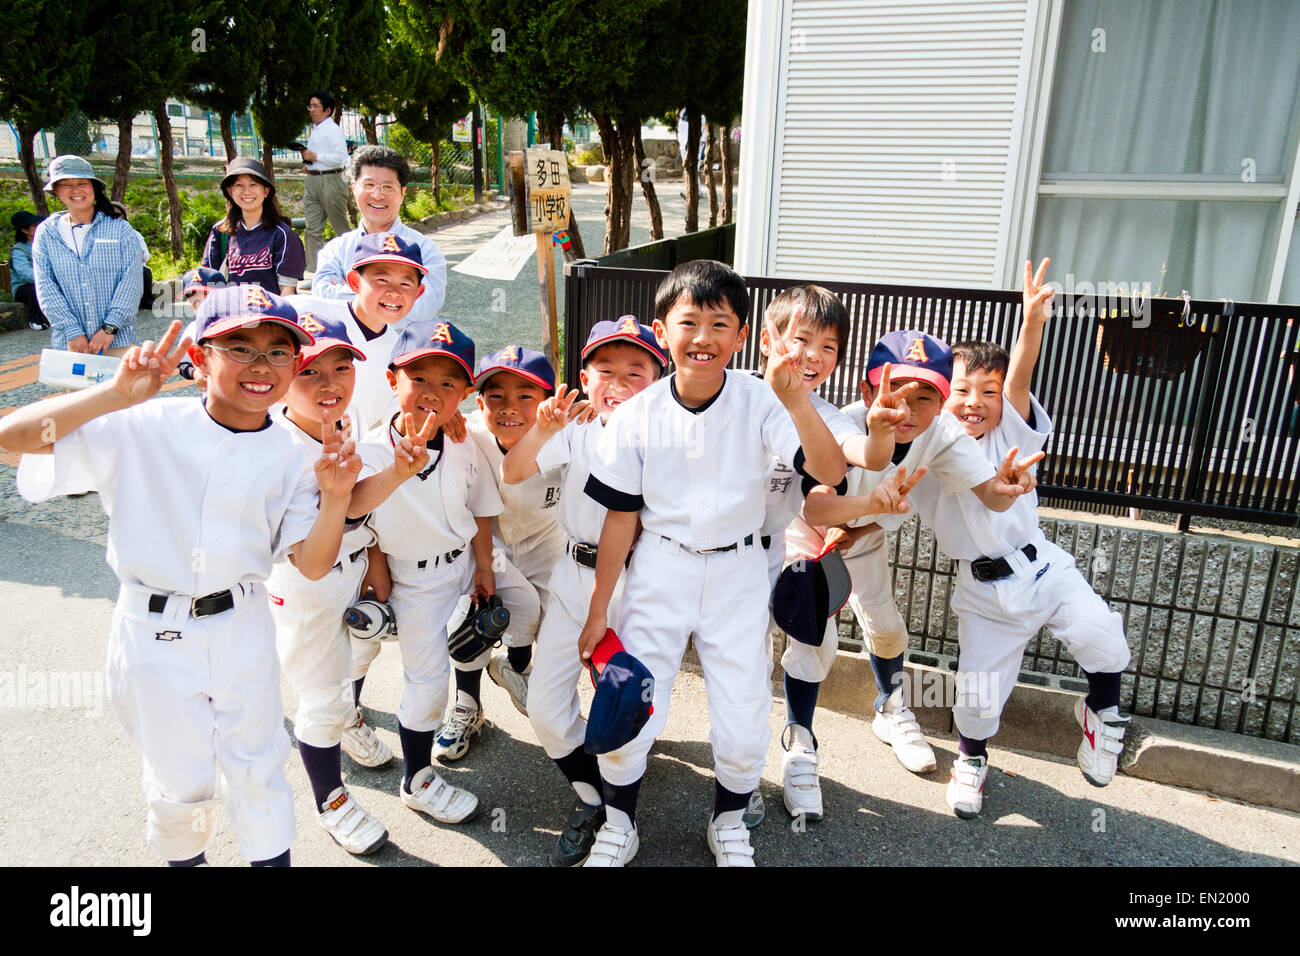 Grupo de niños pequeños, chicos, de 7-10 años, un equipo de béisbol que se posan para el espectador, sonriendo y dando dos gestos de paz con los dedos. Foto de stock